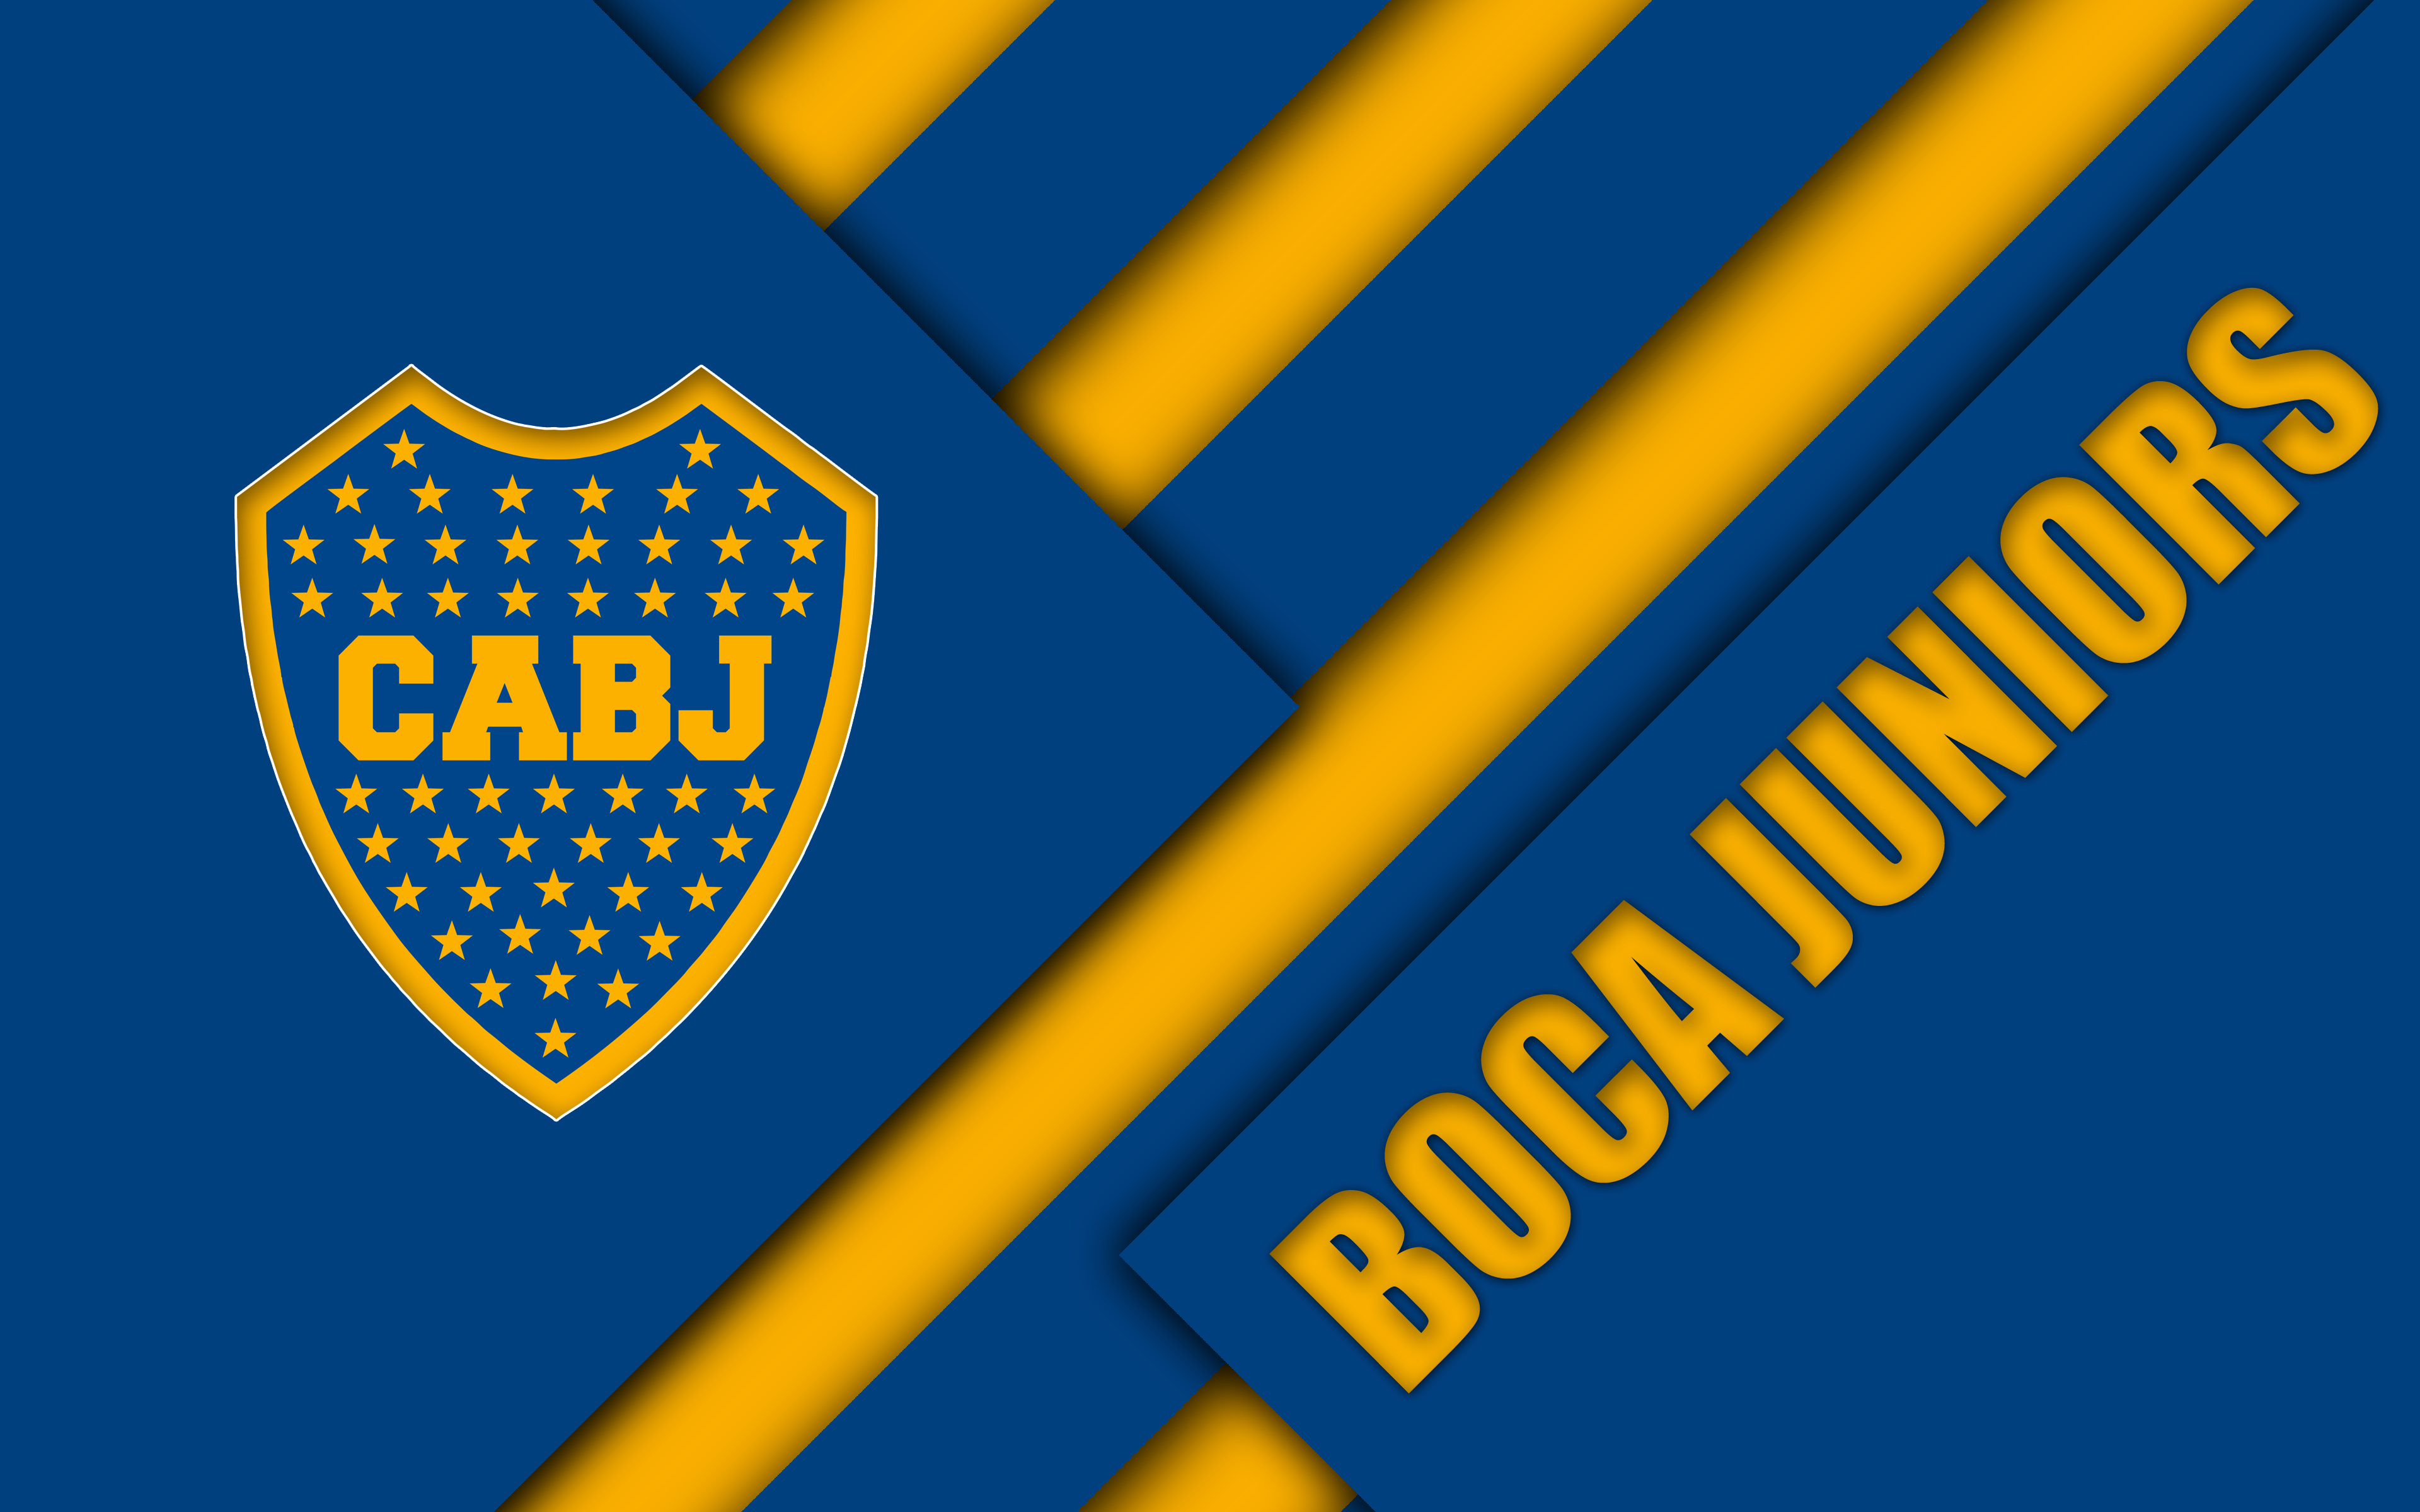 ¡Puaj! 41+ Verdades reales que no sabías antes sobre Boca Juniors